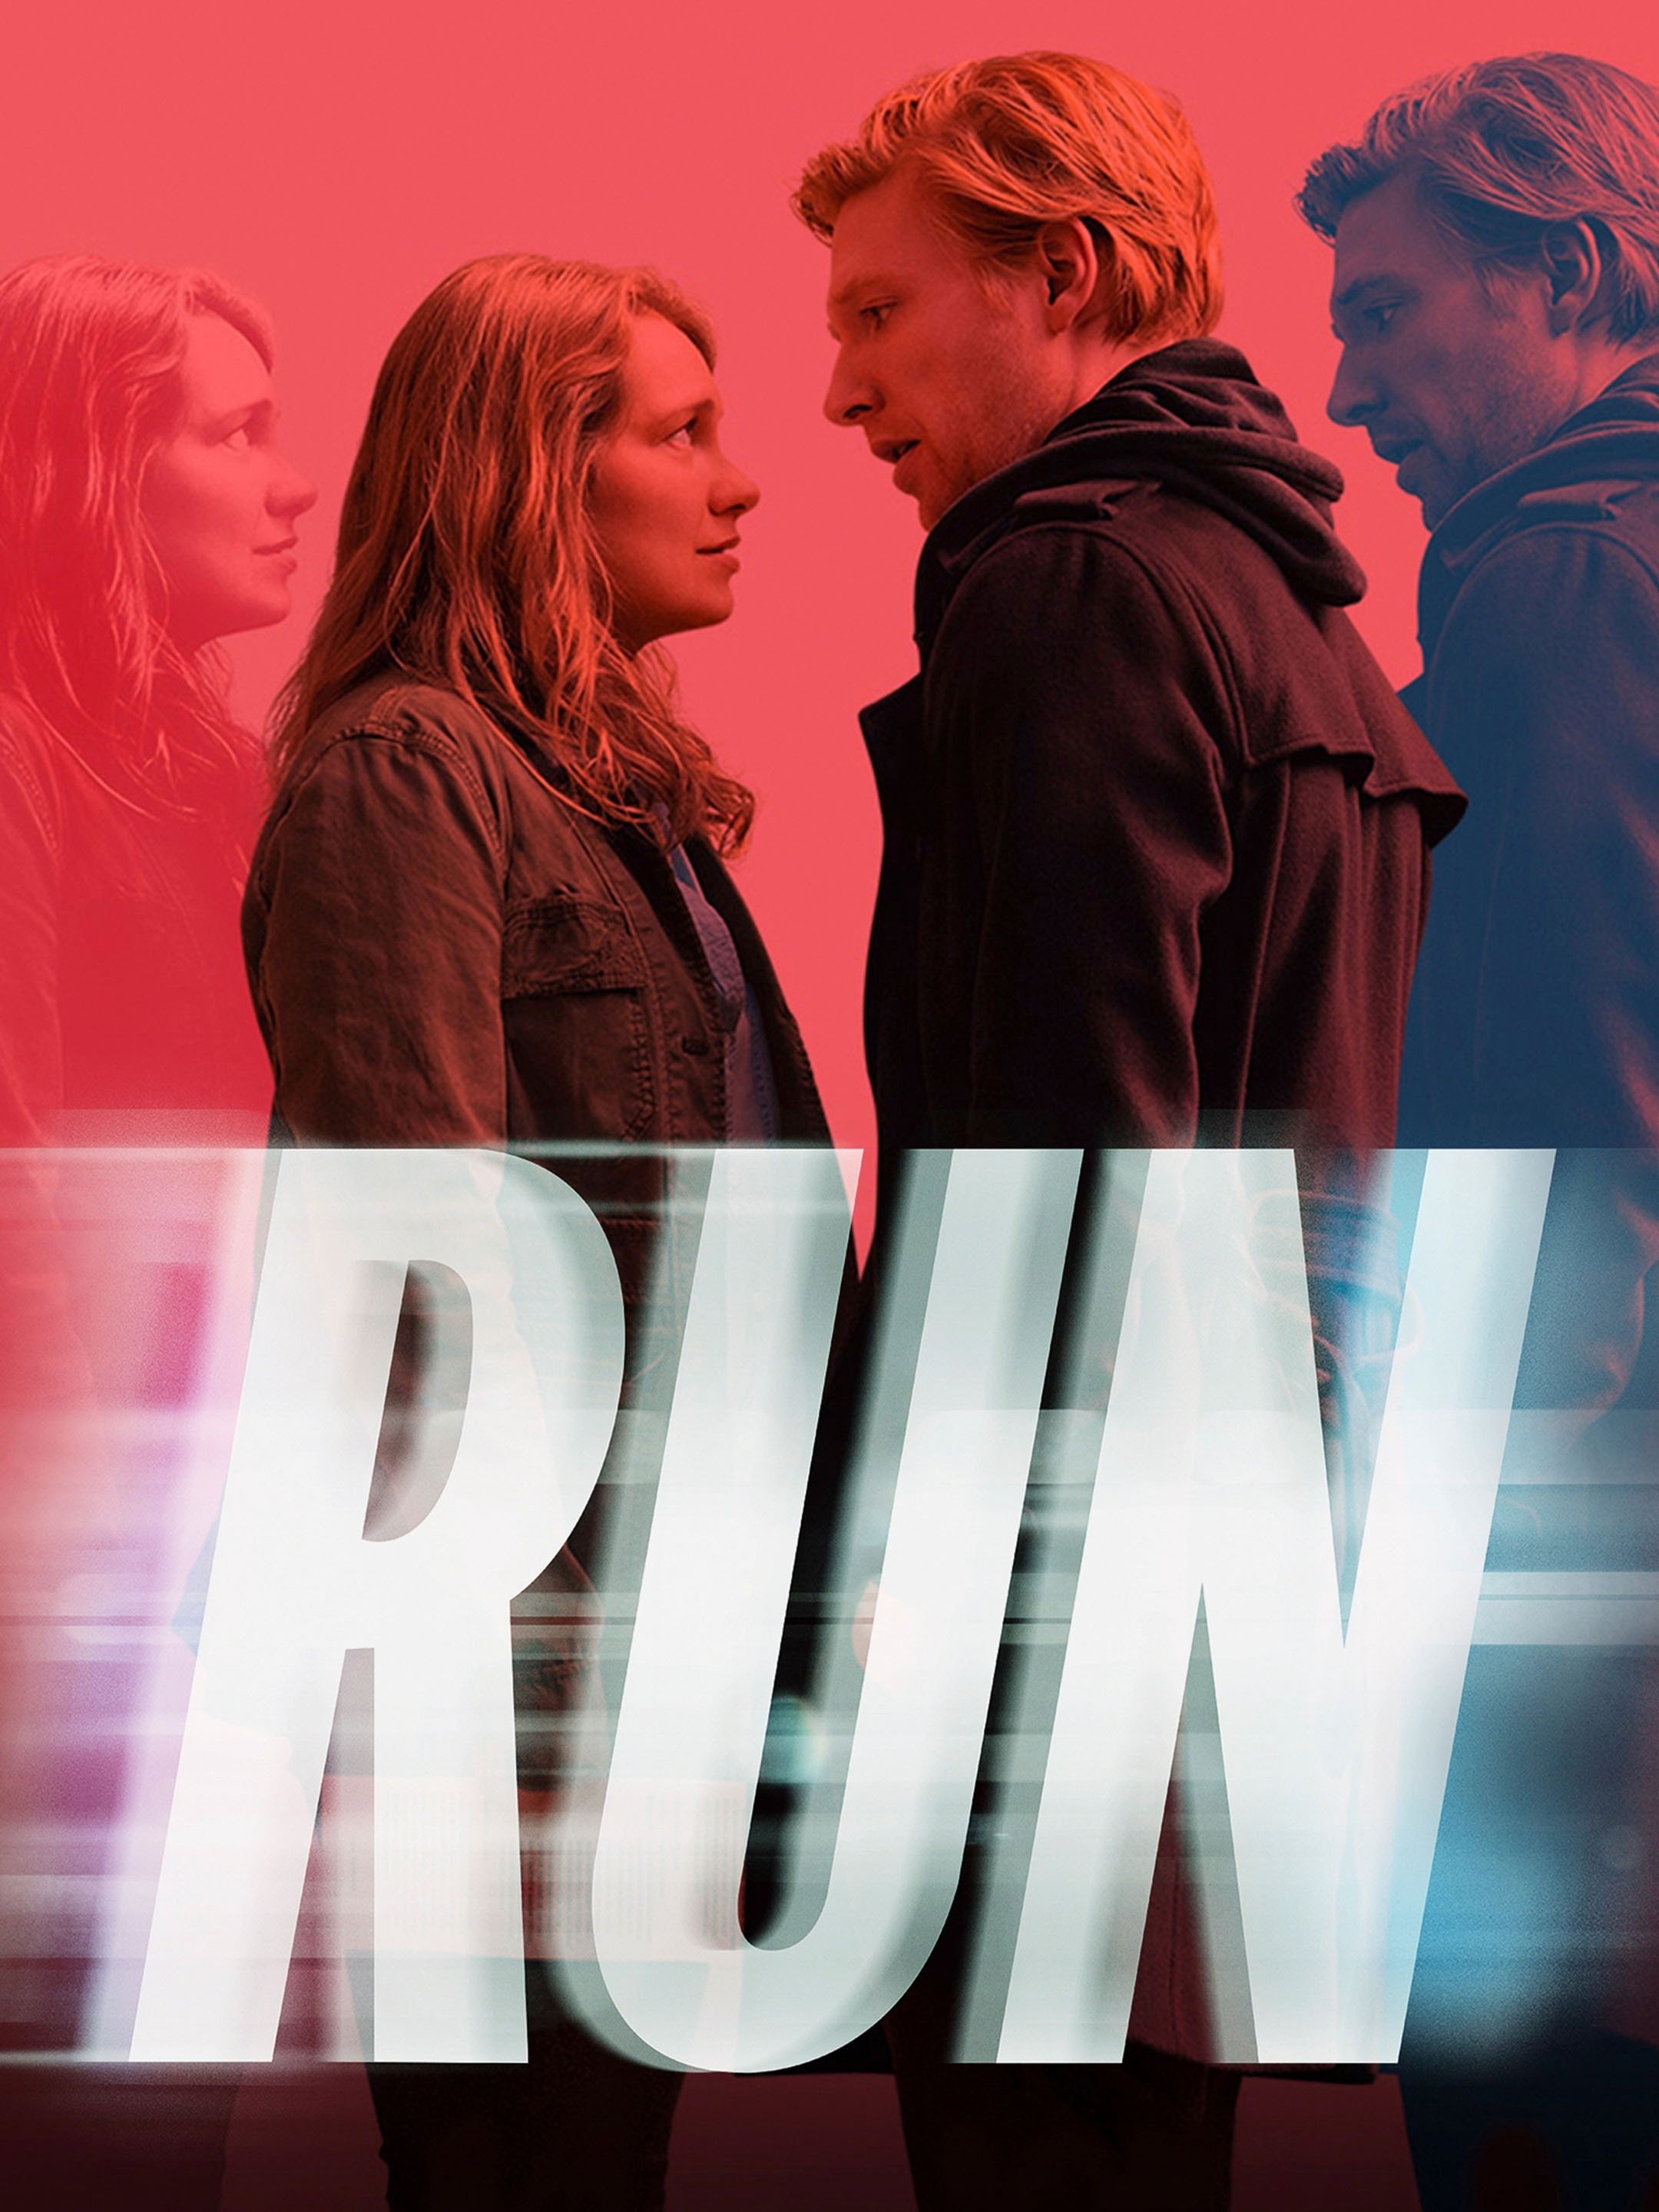 Run: Season 1  Rotten Tomatoes